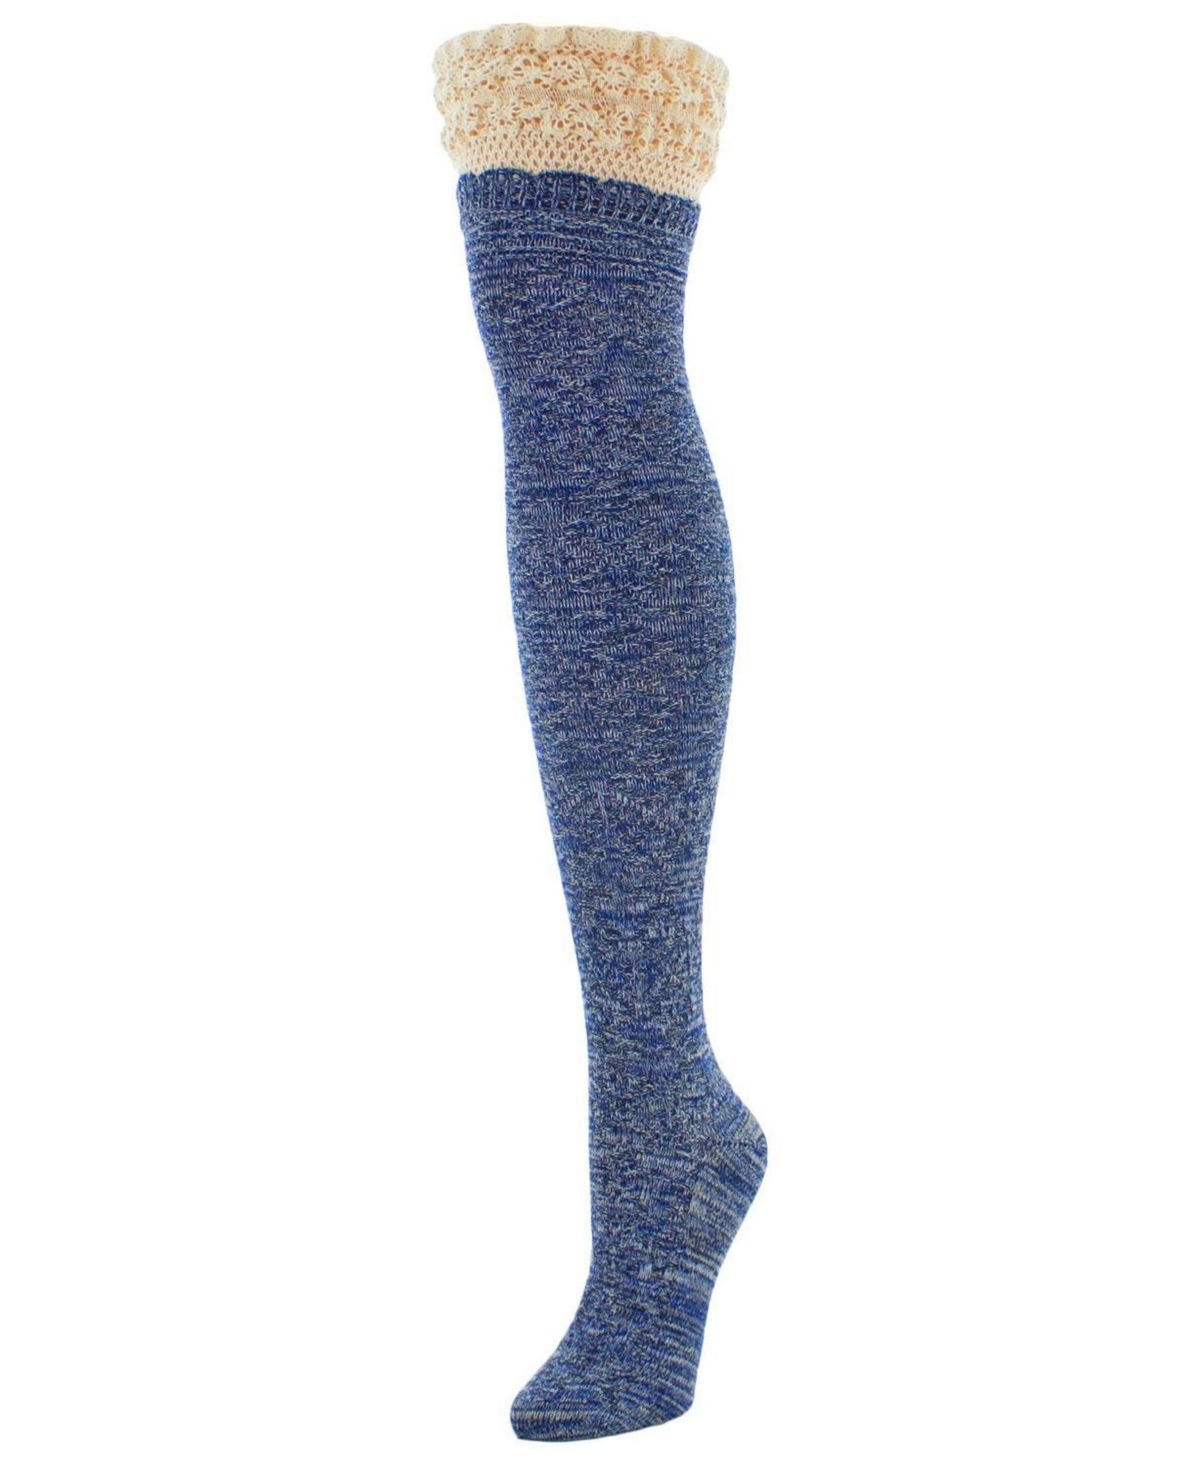 Women's Warped Crochet Over The Knee Socks - Purple Heather